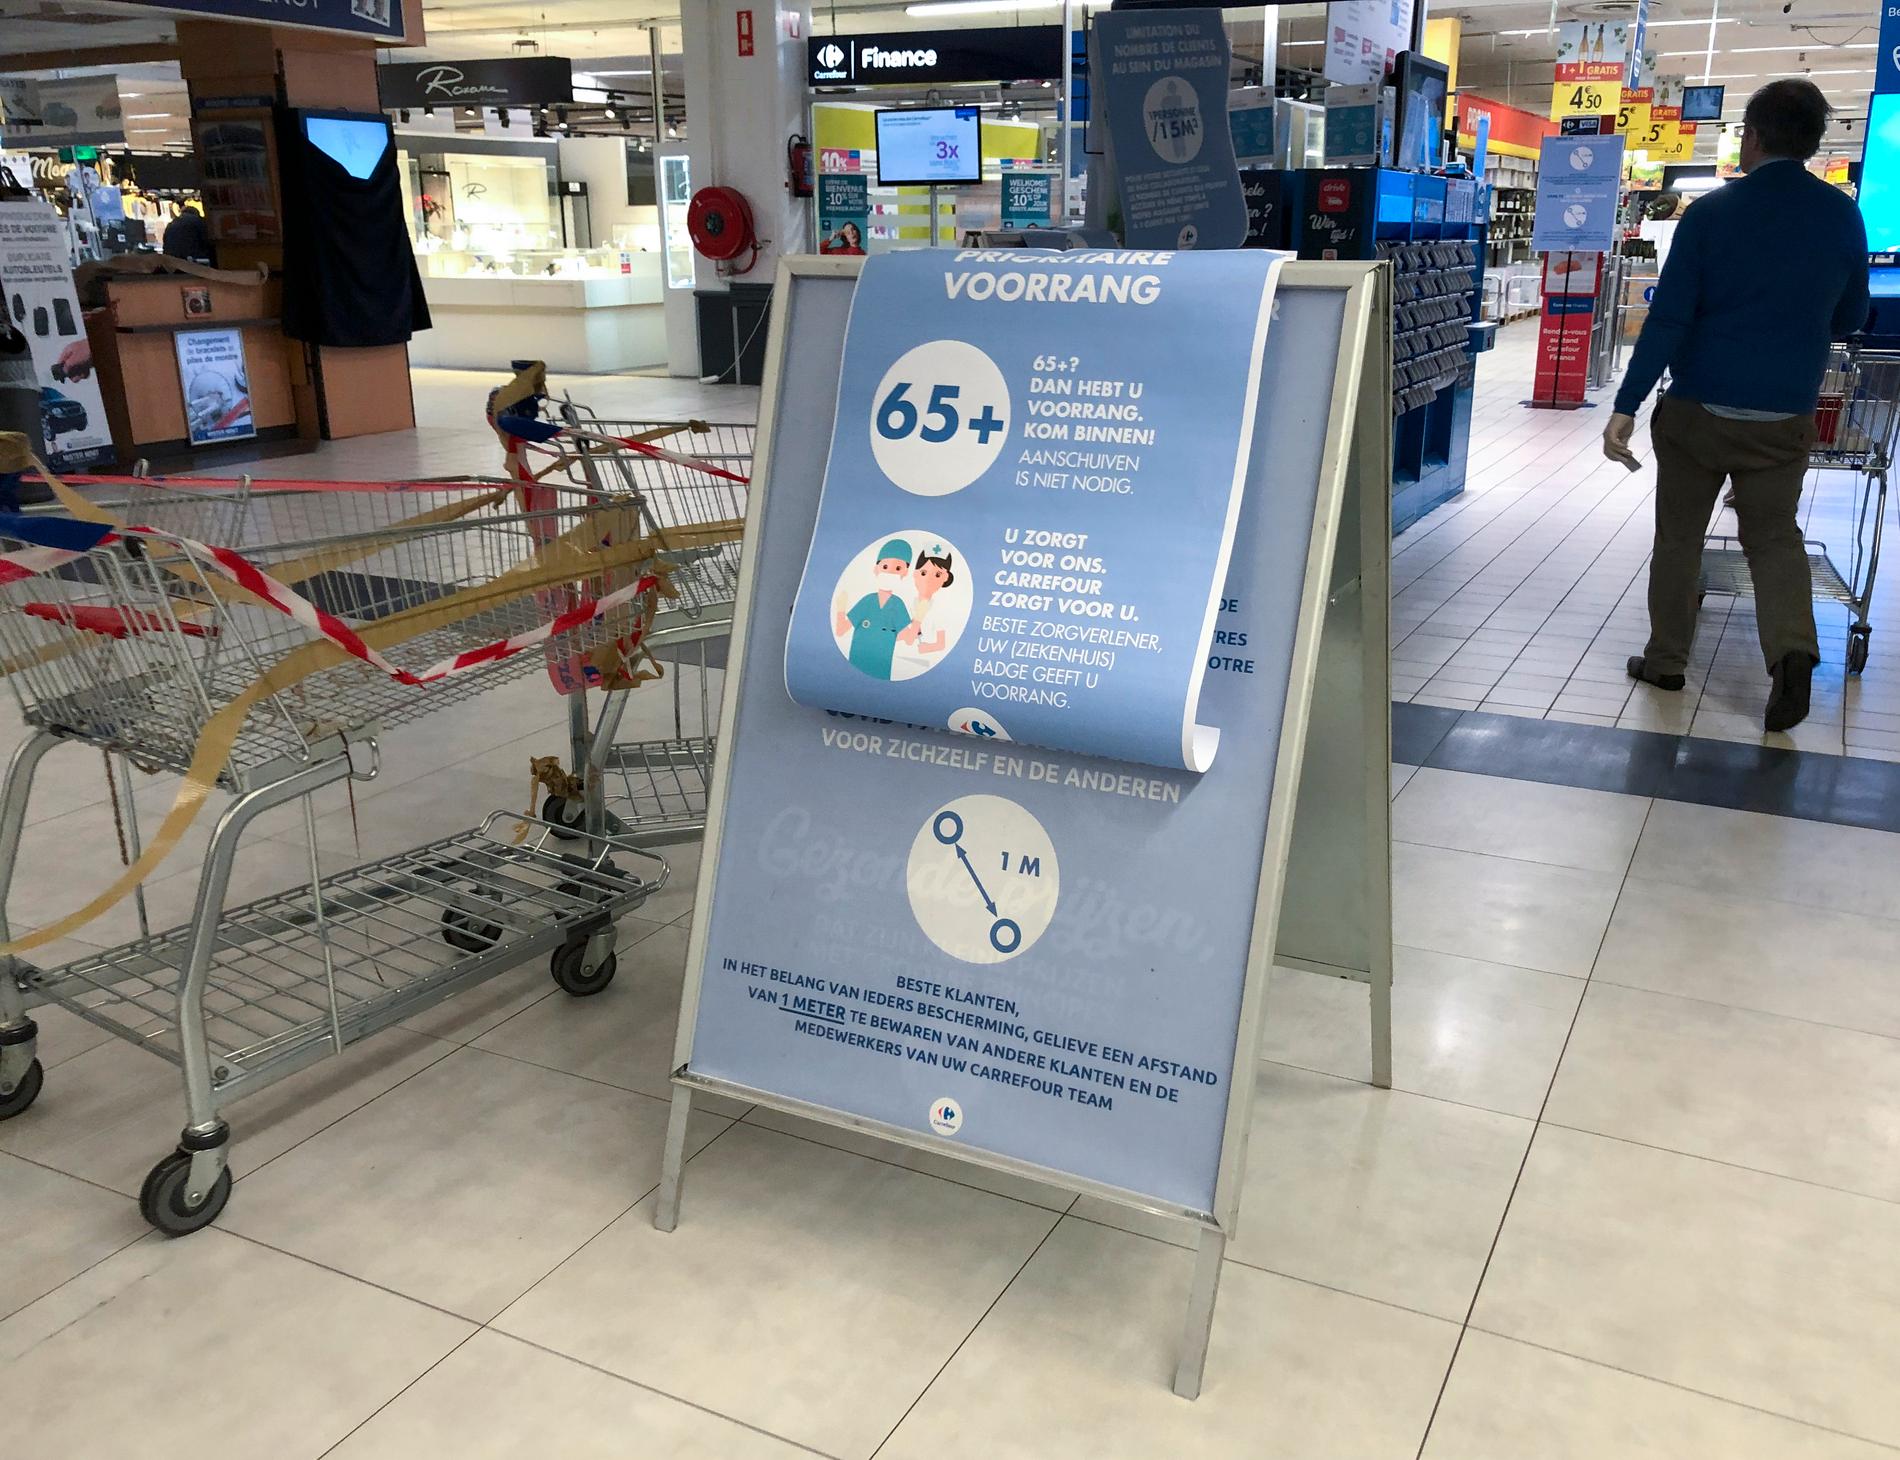 Skyltar i en belgisk matvarubutik manar till minst en meters avstånd mellan kunderna – och ger pensionärer och vårdanställda rätt att gå före i kön.